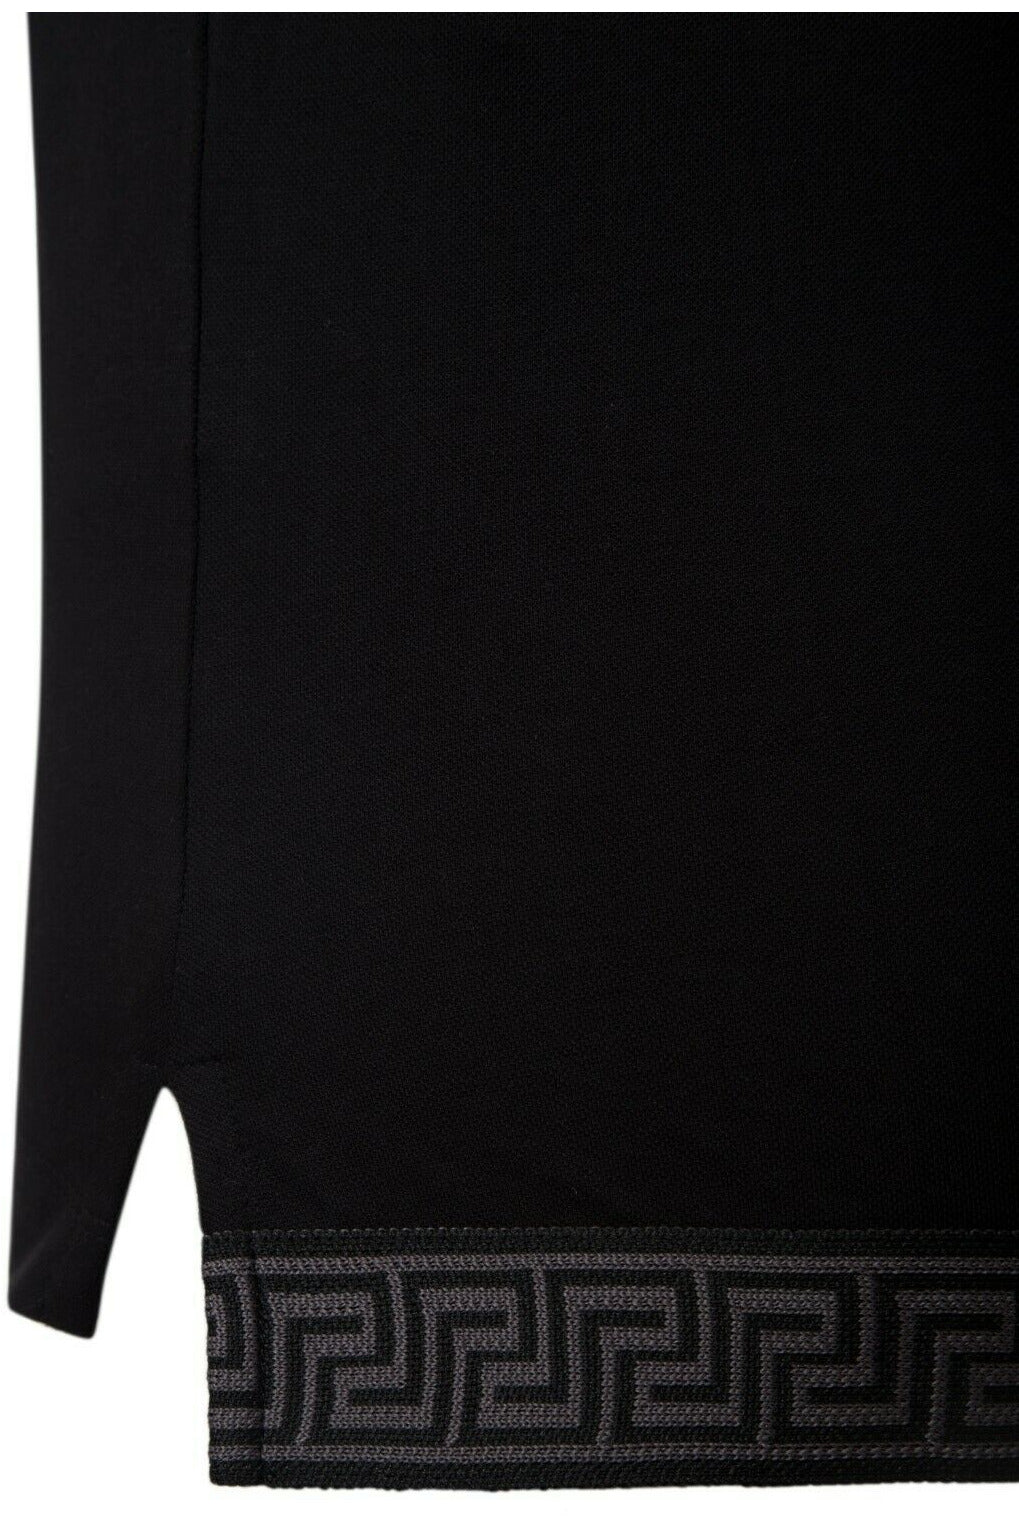 Versace Men Black Polo Shirt  Material Cotton